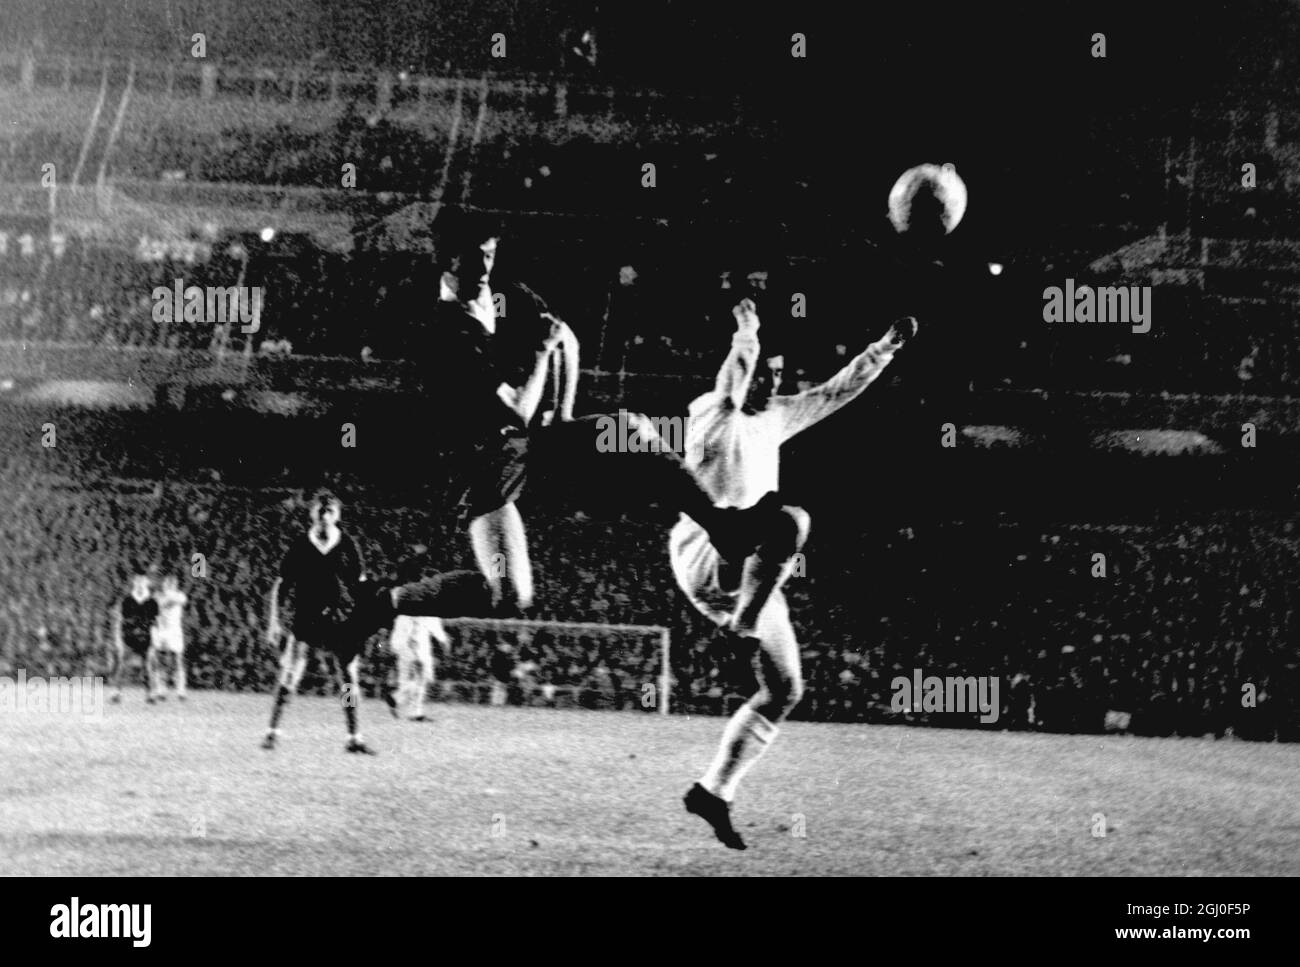 Action während der Qualifikationsrunde im Europacup, dem zweiten Beinspiel zwischen Real Madrid und den Glasgow Rangers. Ferenc Puskas (in weiß) von Real Madrid wird in einem Gefecht mit einem schottischen Verteidiger gesehen. Glasgow Rangers wurden 6-0 geschlagen, als Real Madrid einen Gesamtsieg von 7-0 abschloss. Puskas erzielte drei Tore seines Teams. Oktober 1963. Stockfoto